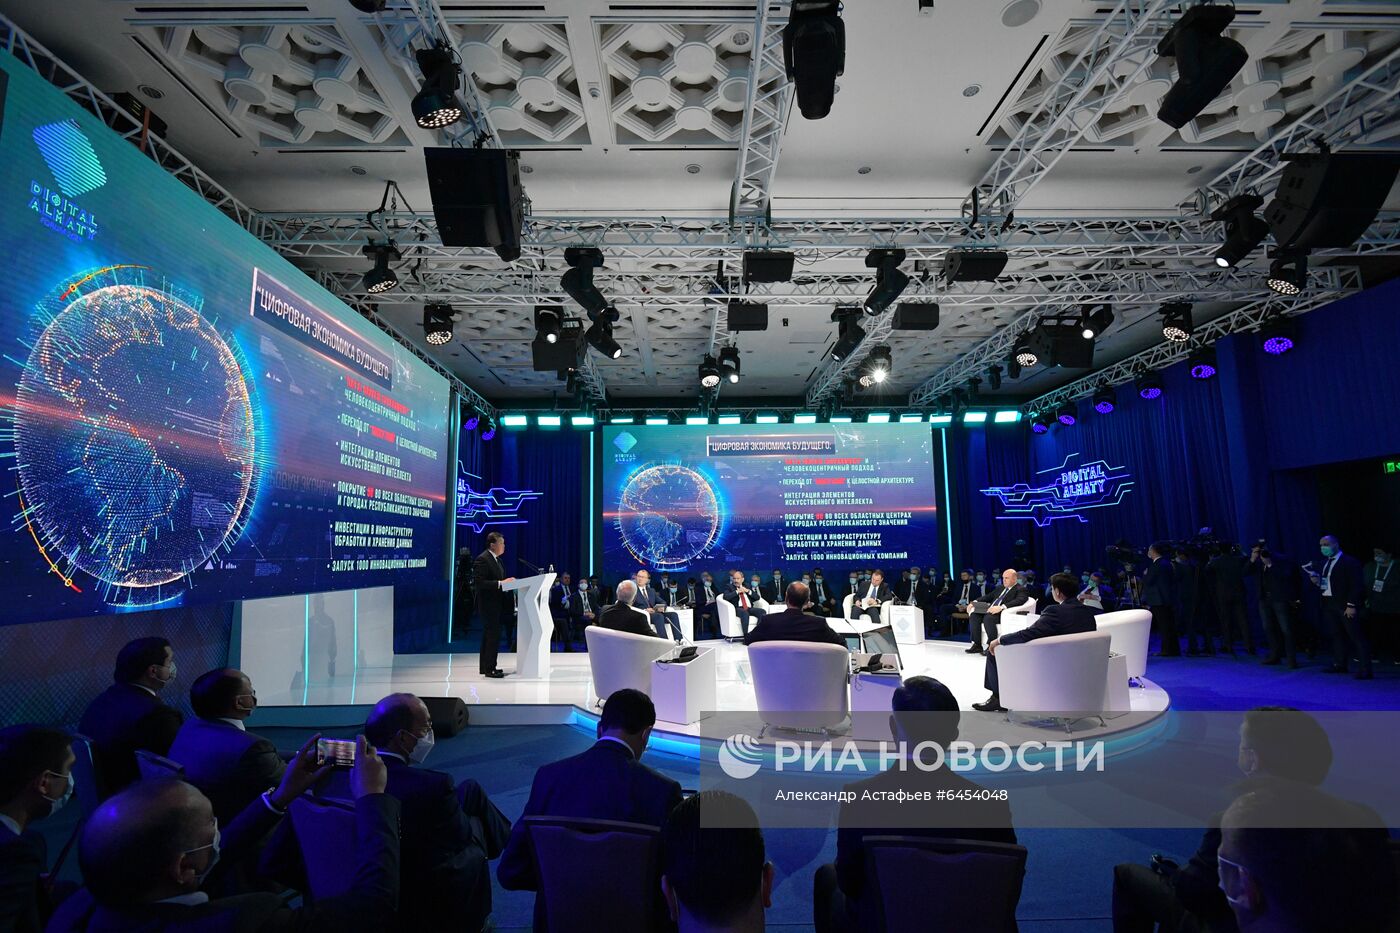 Digital forum в Алма-Ате